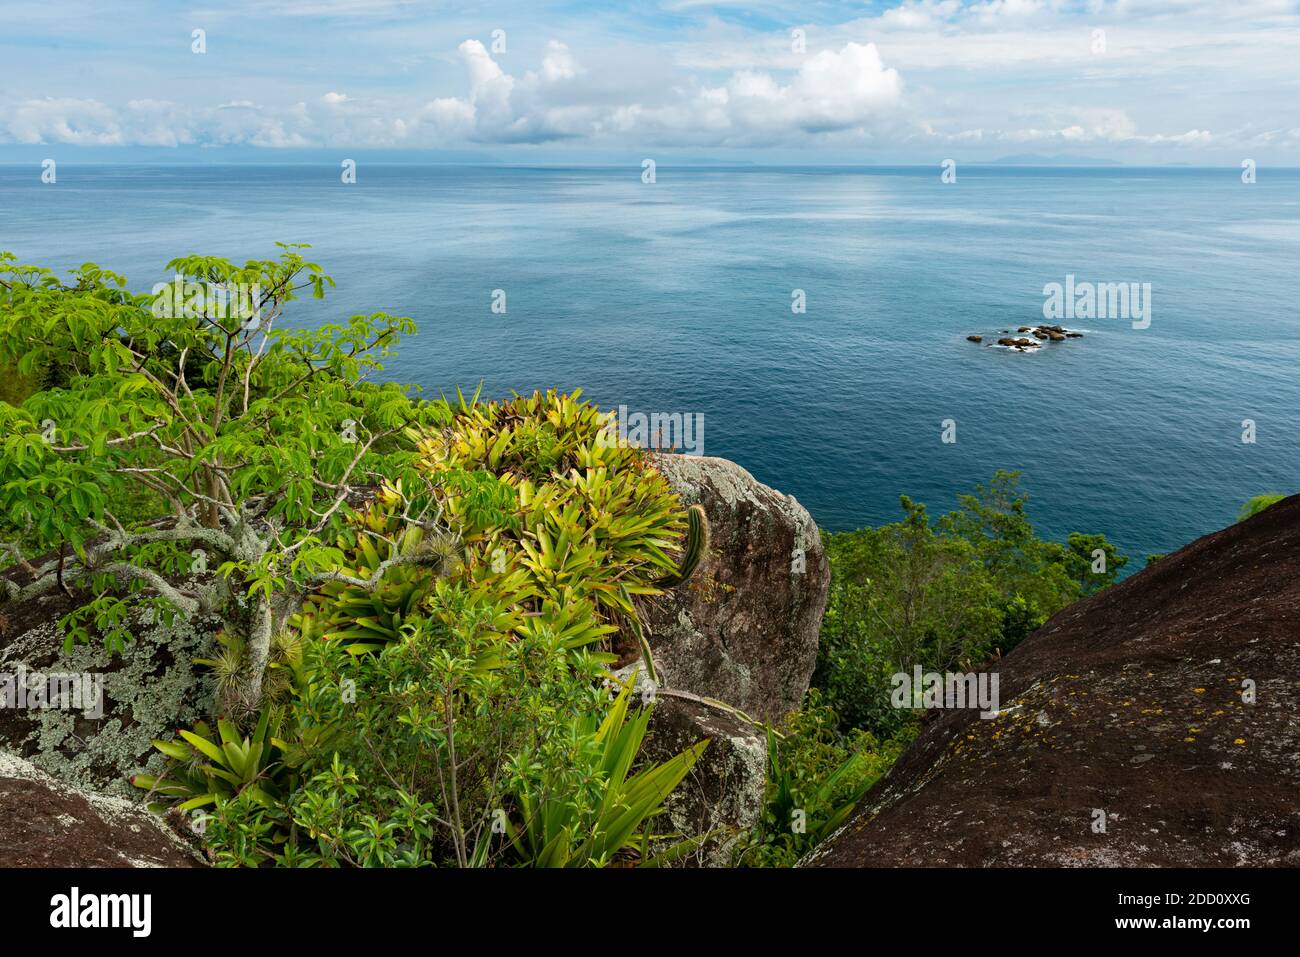 View from the Island of Búzios, in coastal São Paulo State, SE Brazil Stock Photo